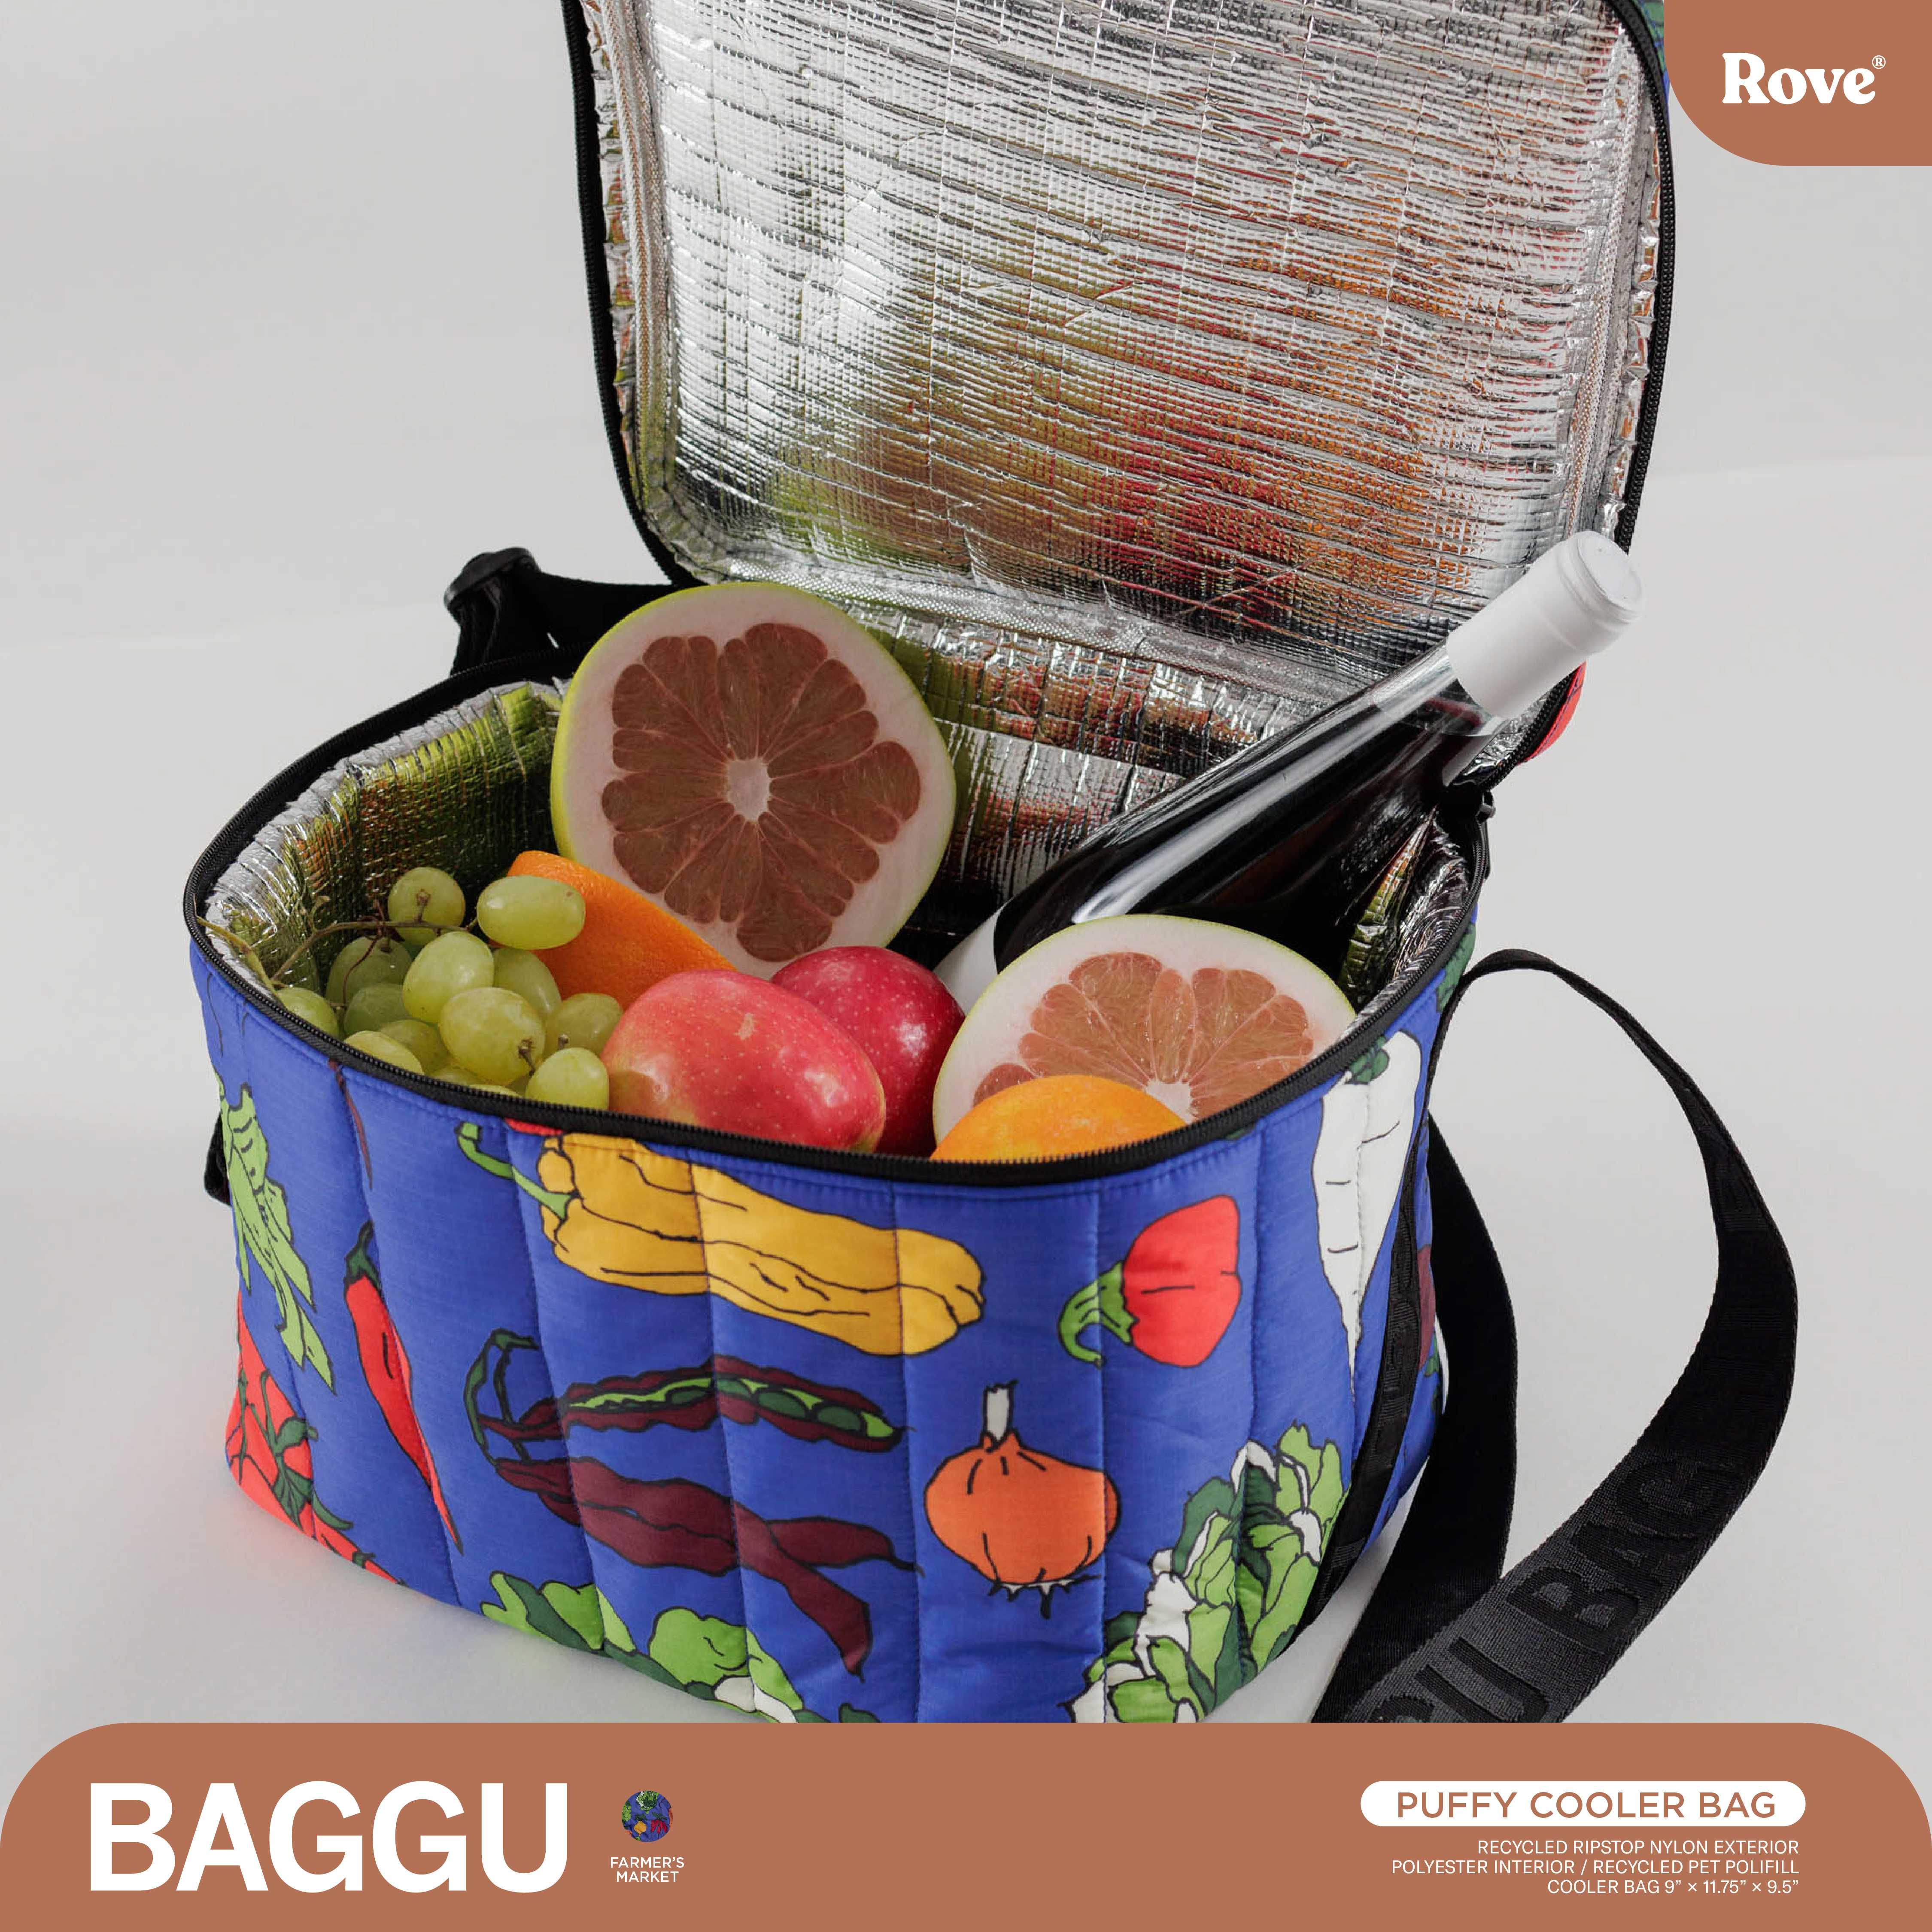 Baggu Puffy Cooler Bag